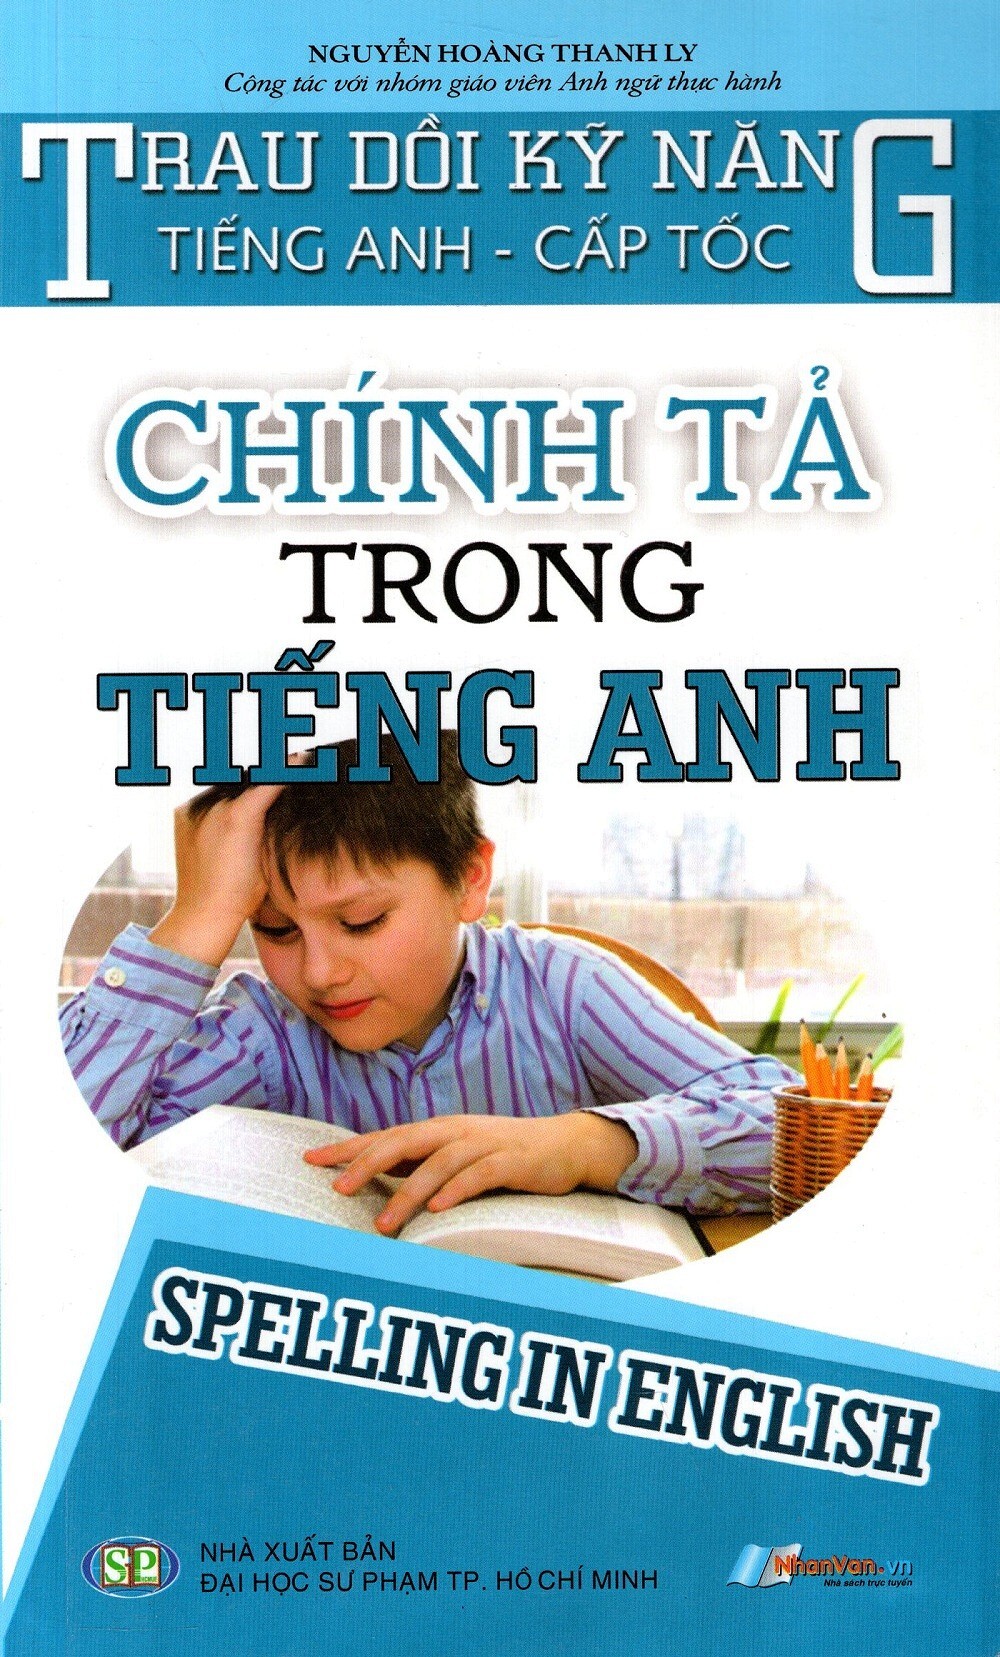 Chính Tả Trong Tiếng Anh - Tác giả Nguyễn Hoàng Thanh Ly